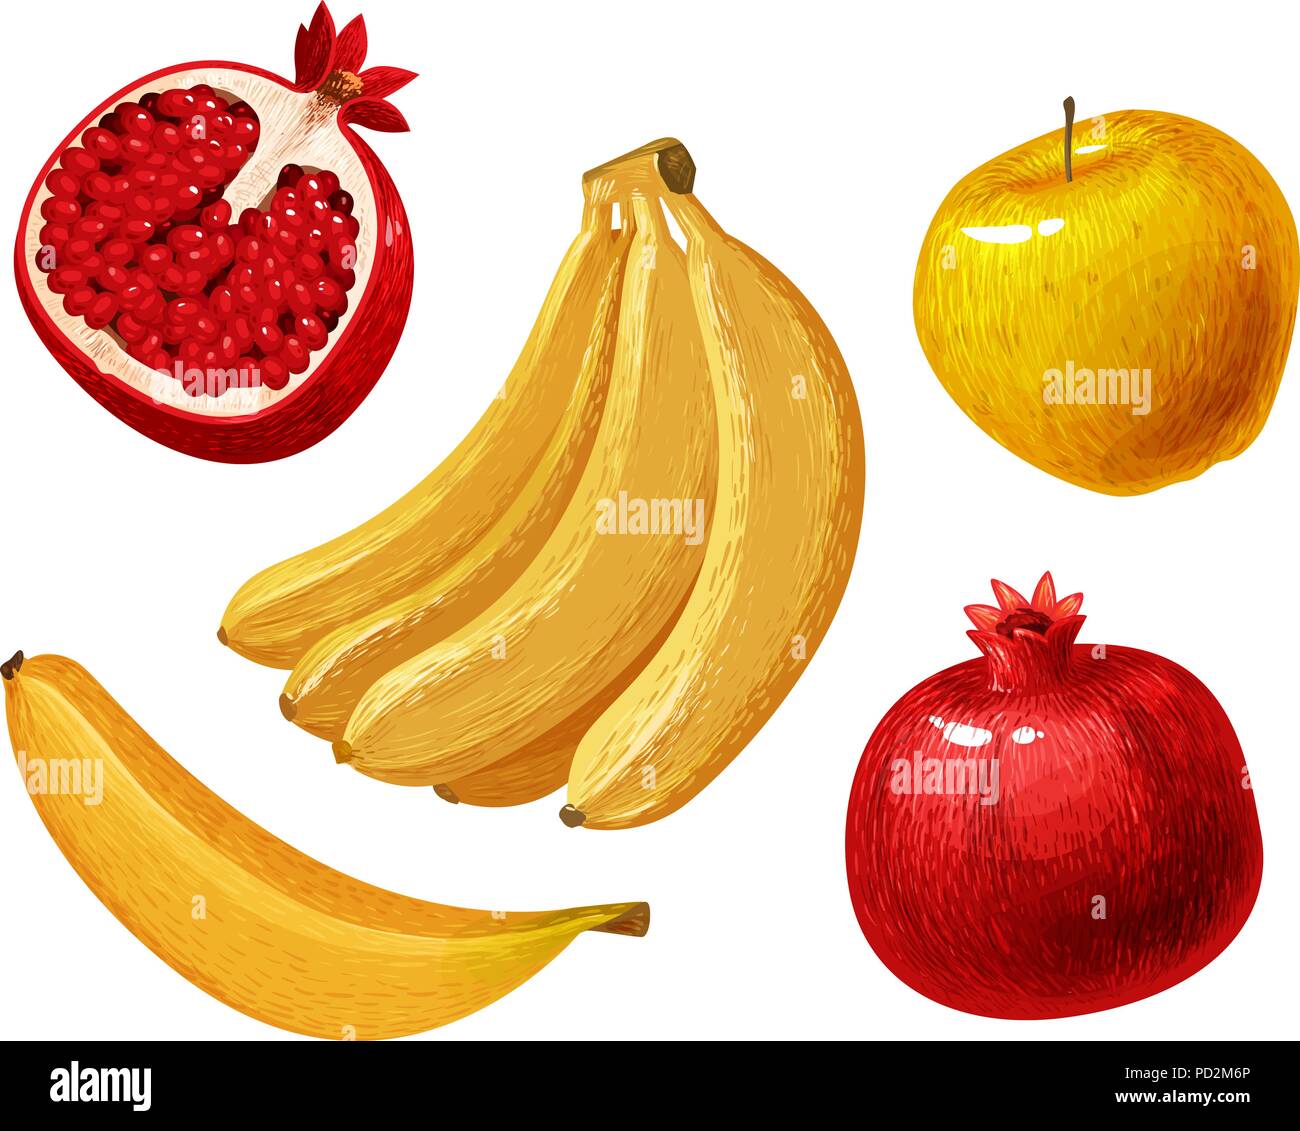 Früchten wie Banane, Apfel, Granatapfel. Vector Illustration Stock Vektor